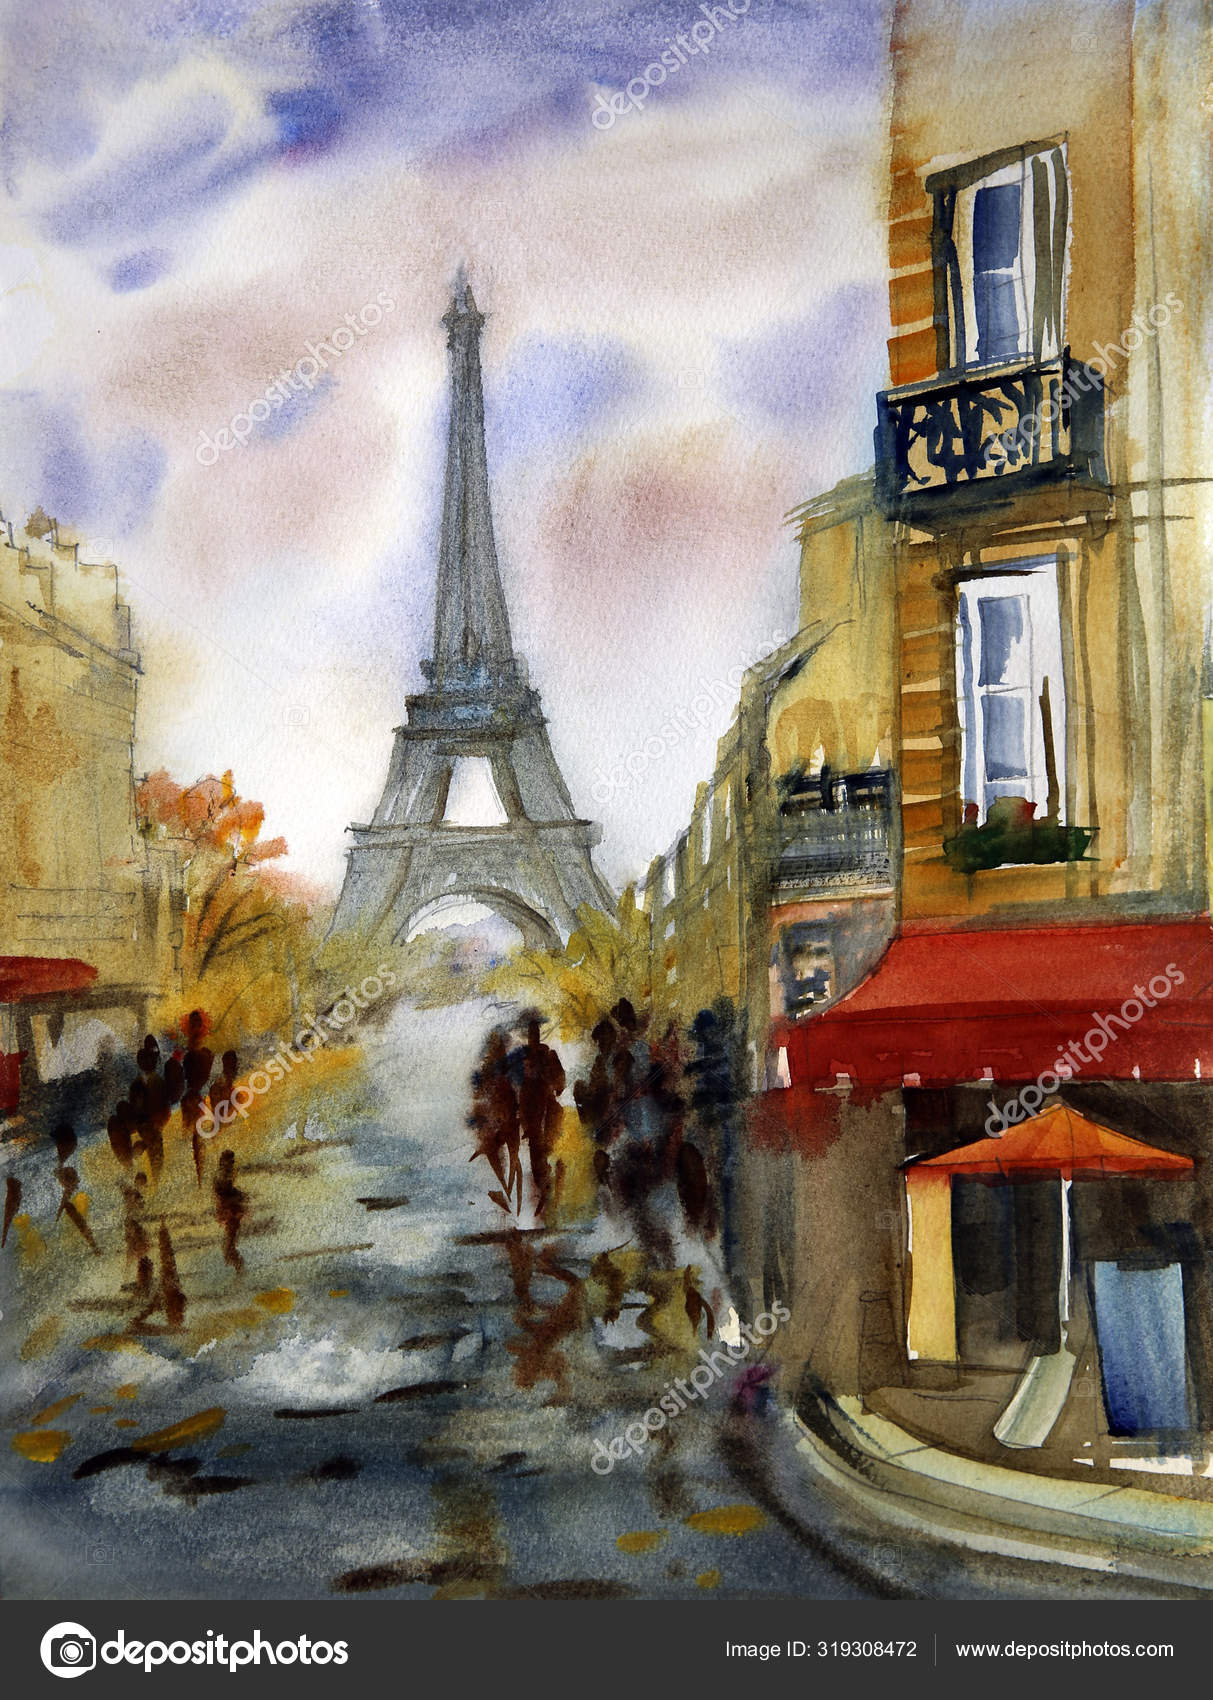 Giclee Paris Eiffel Tower Art France watercolor Painting La Tour Eiffel French 